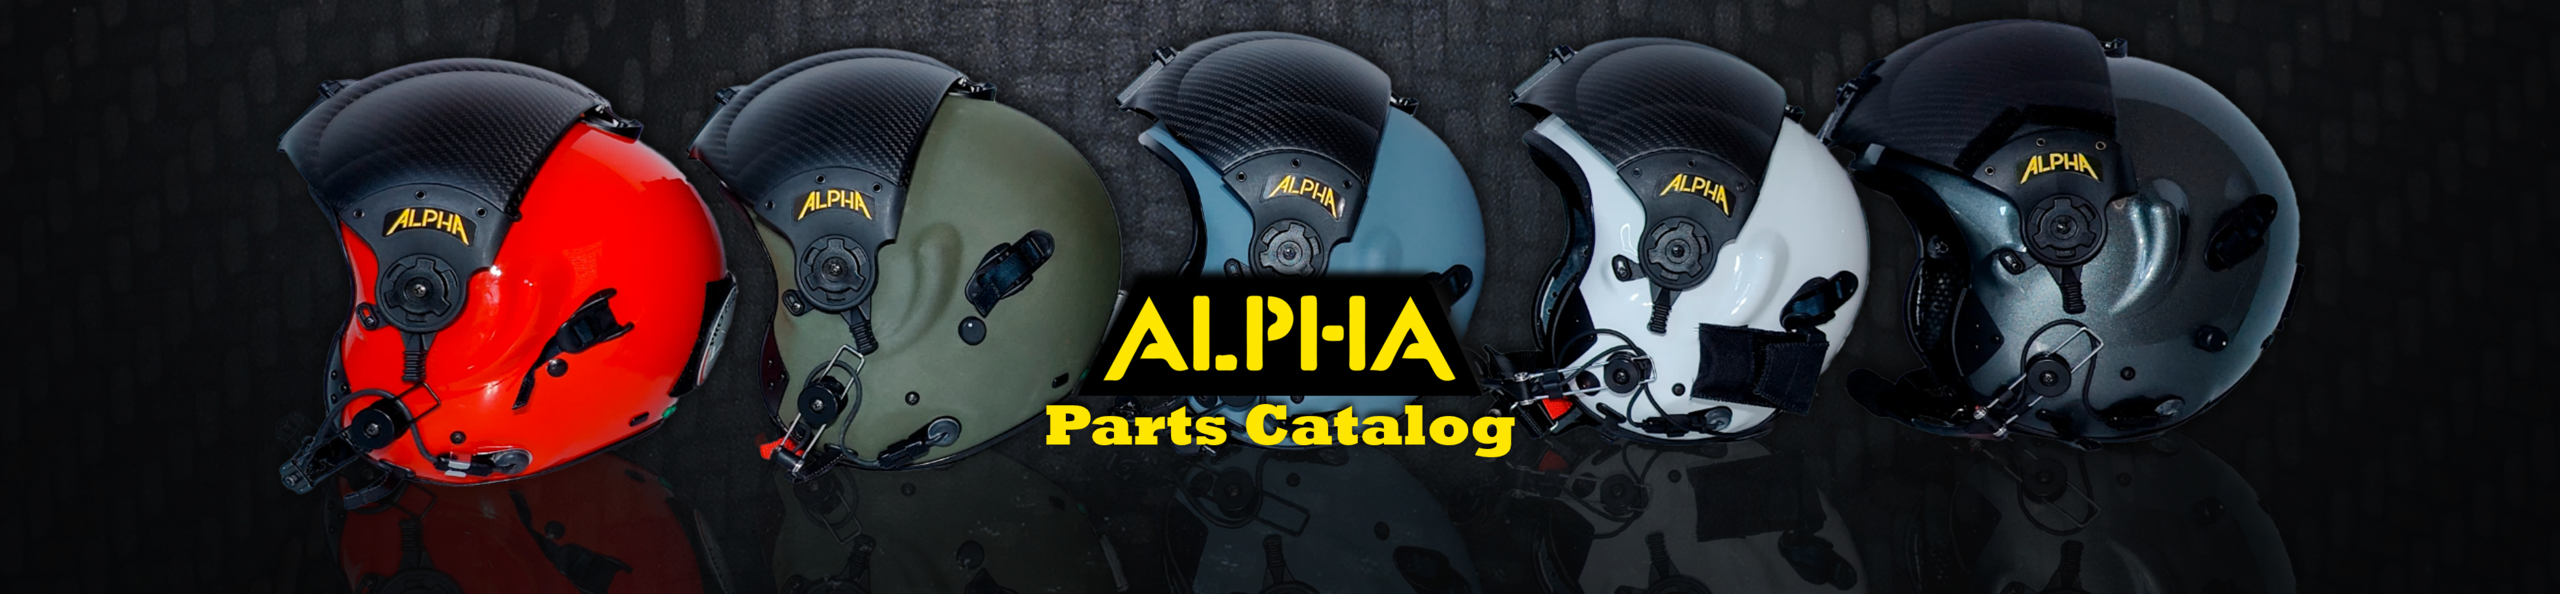 ALPHA Parts Catalog